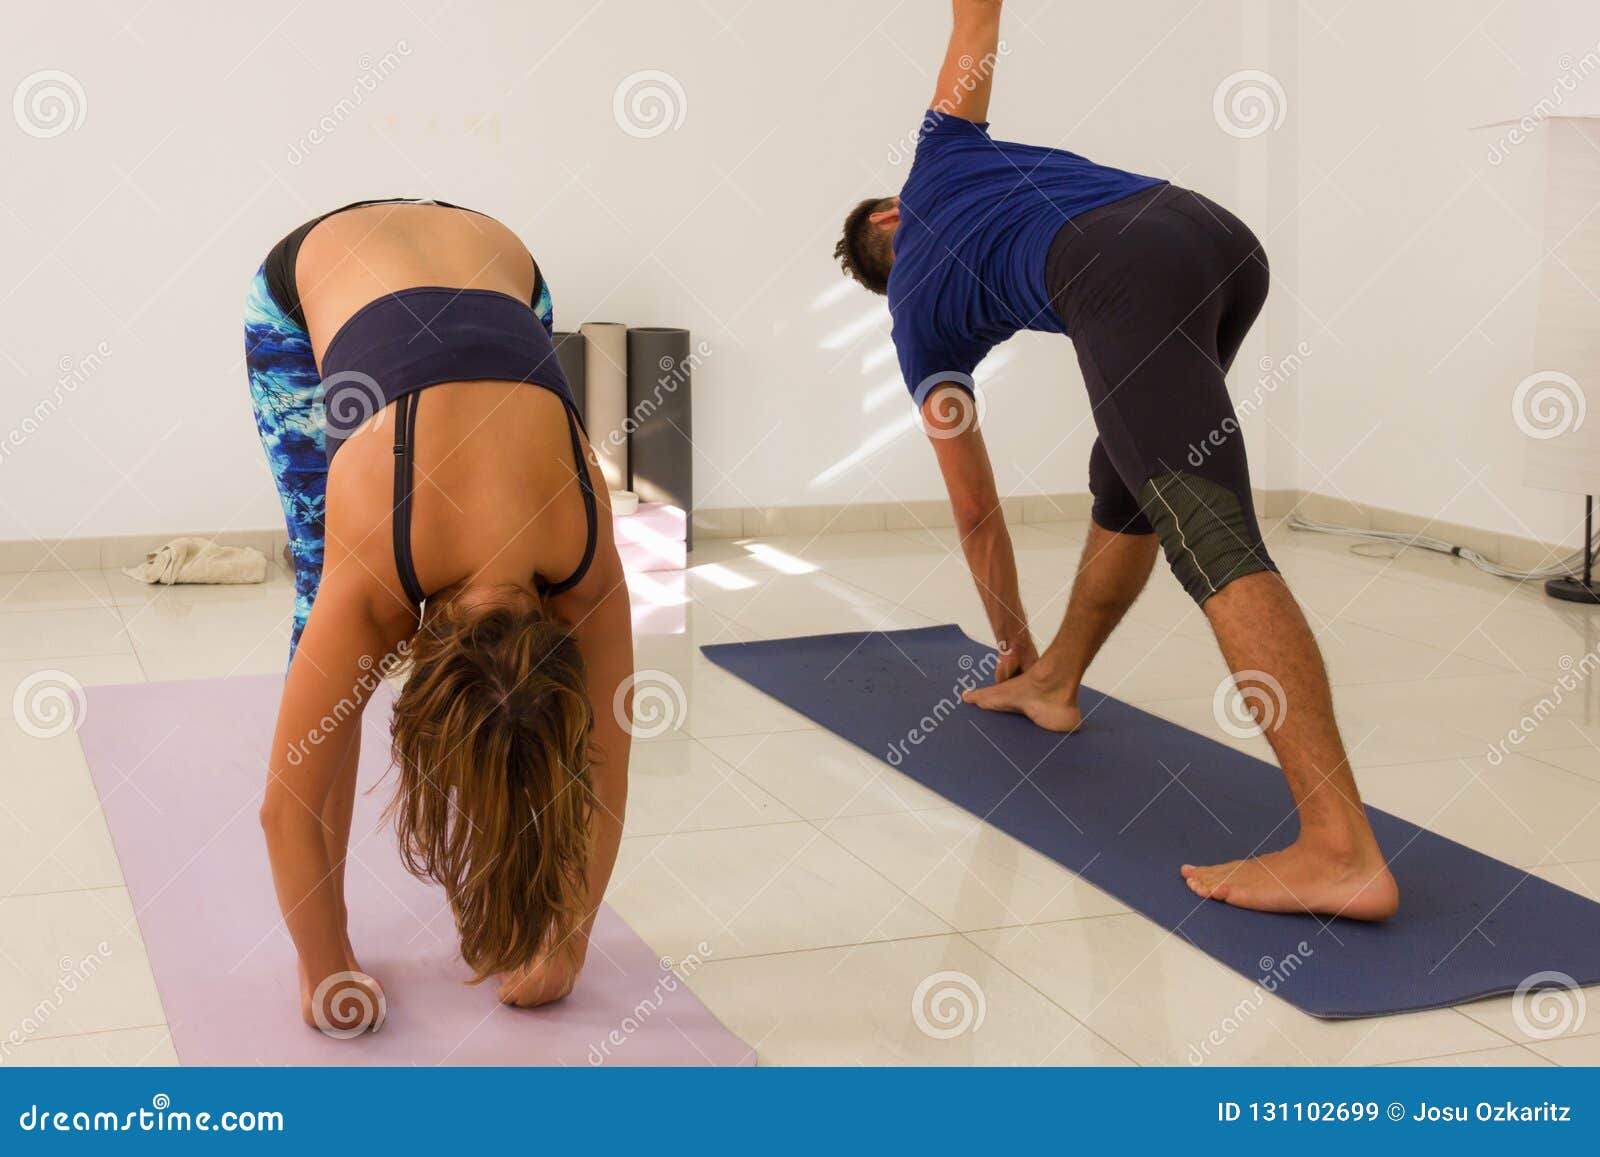 Ashtanga Yoga Classes in Las Vegas | Kintsugi Yoga